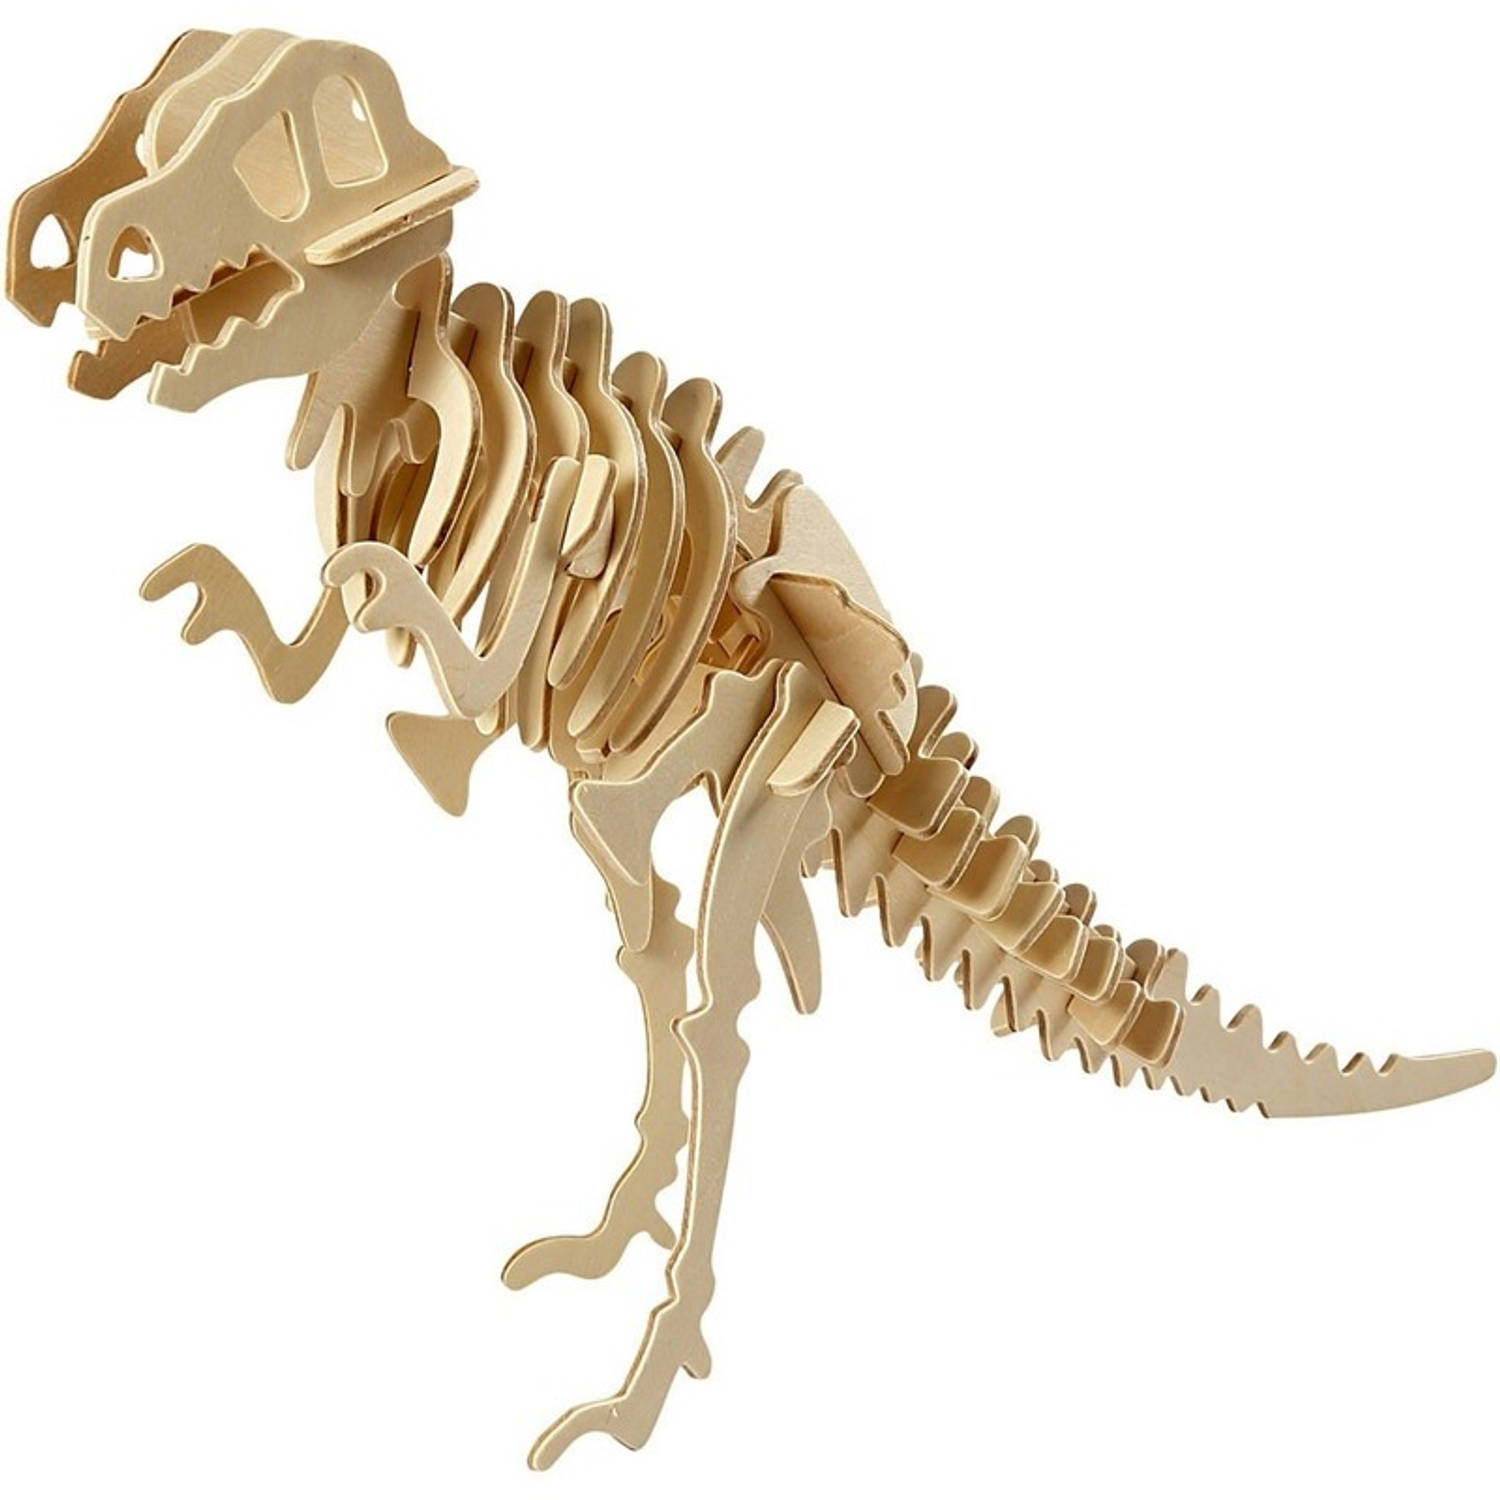 3d Puzzel Dinosaurus Velociraptor Hout 3d Dino Bouwspeelgoed